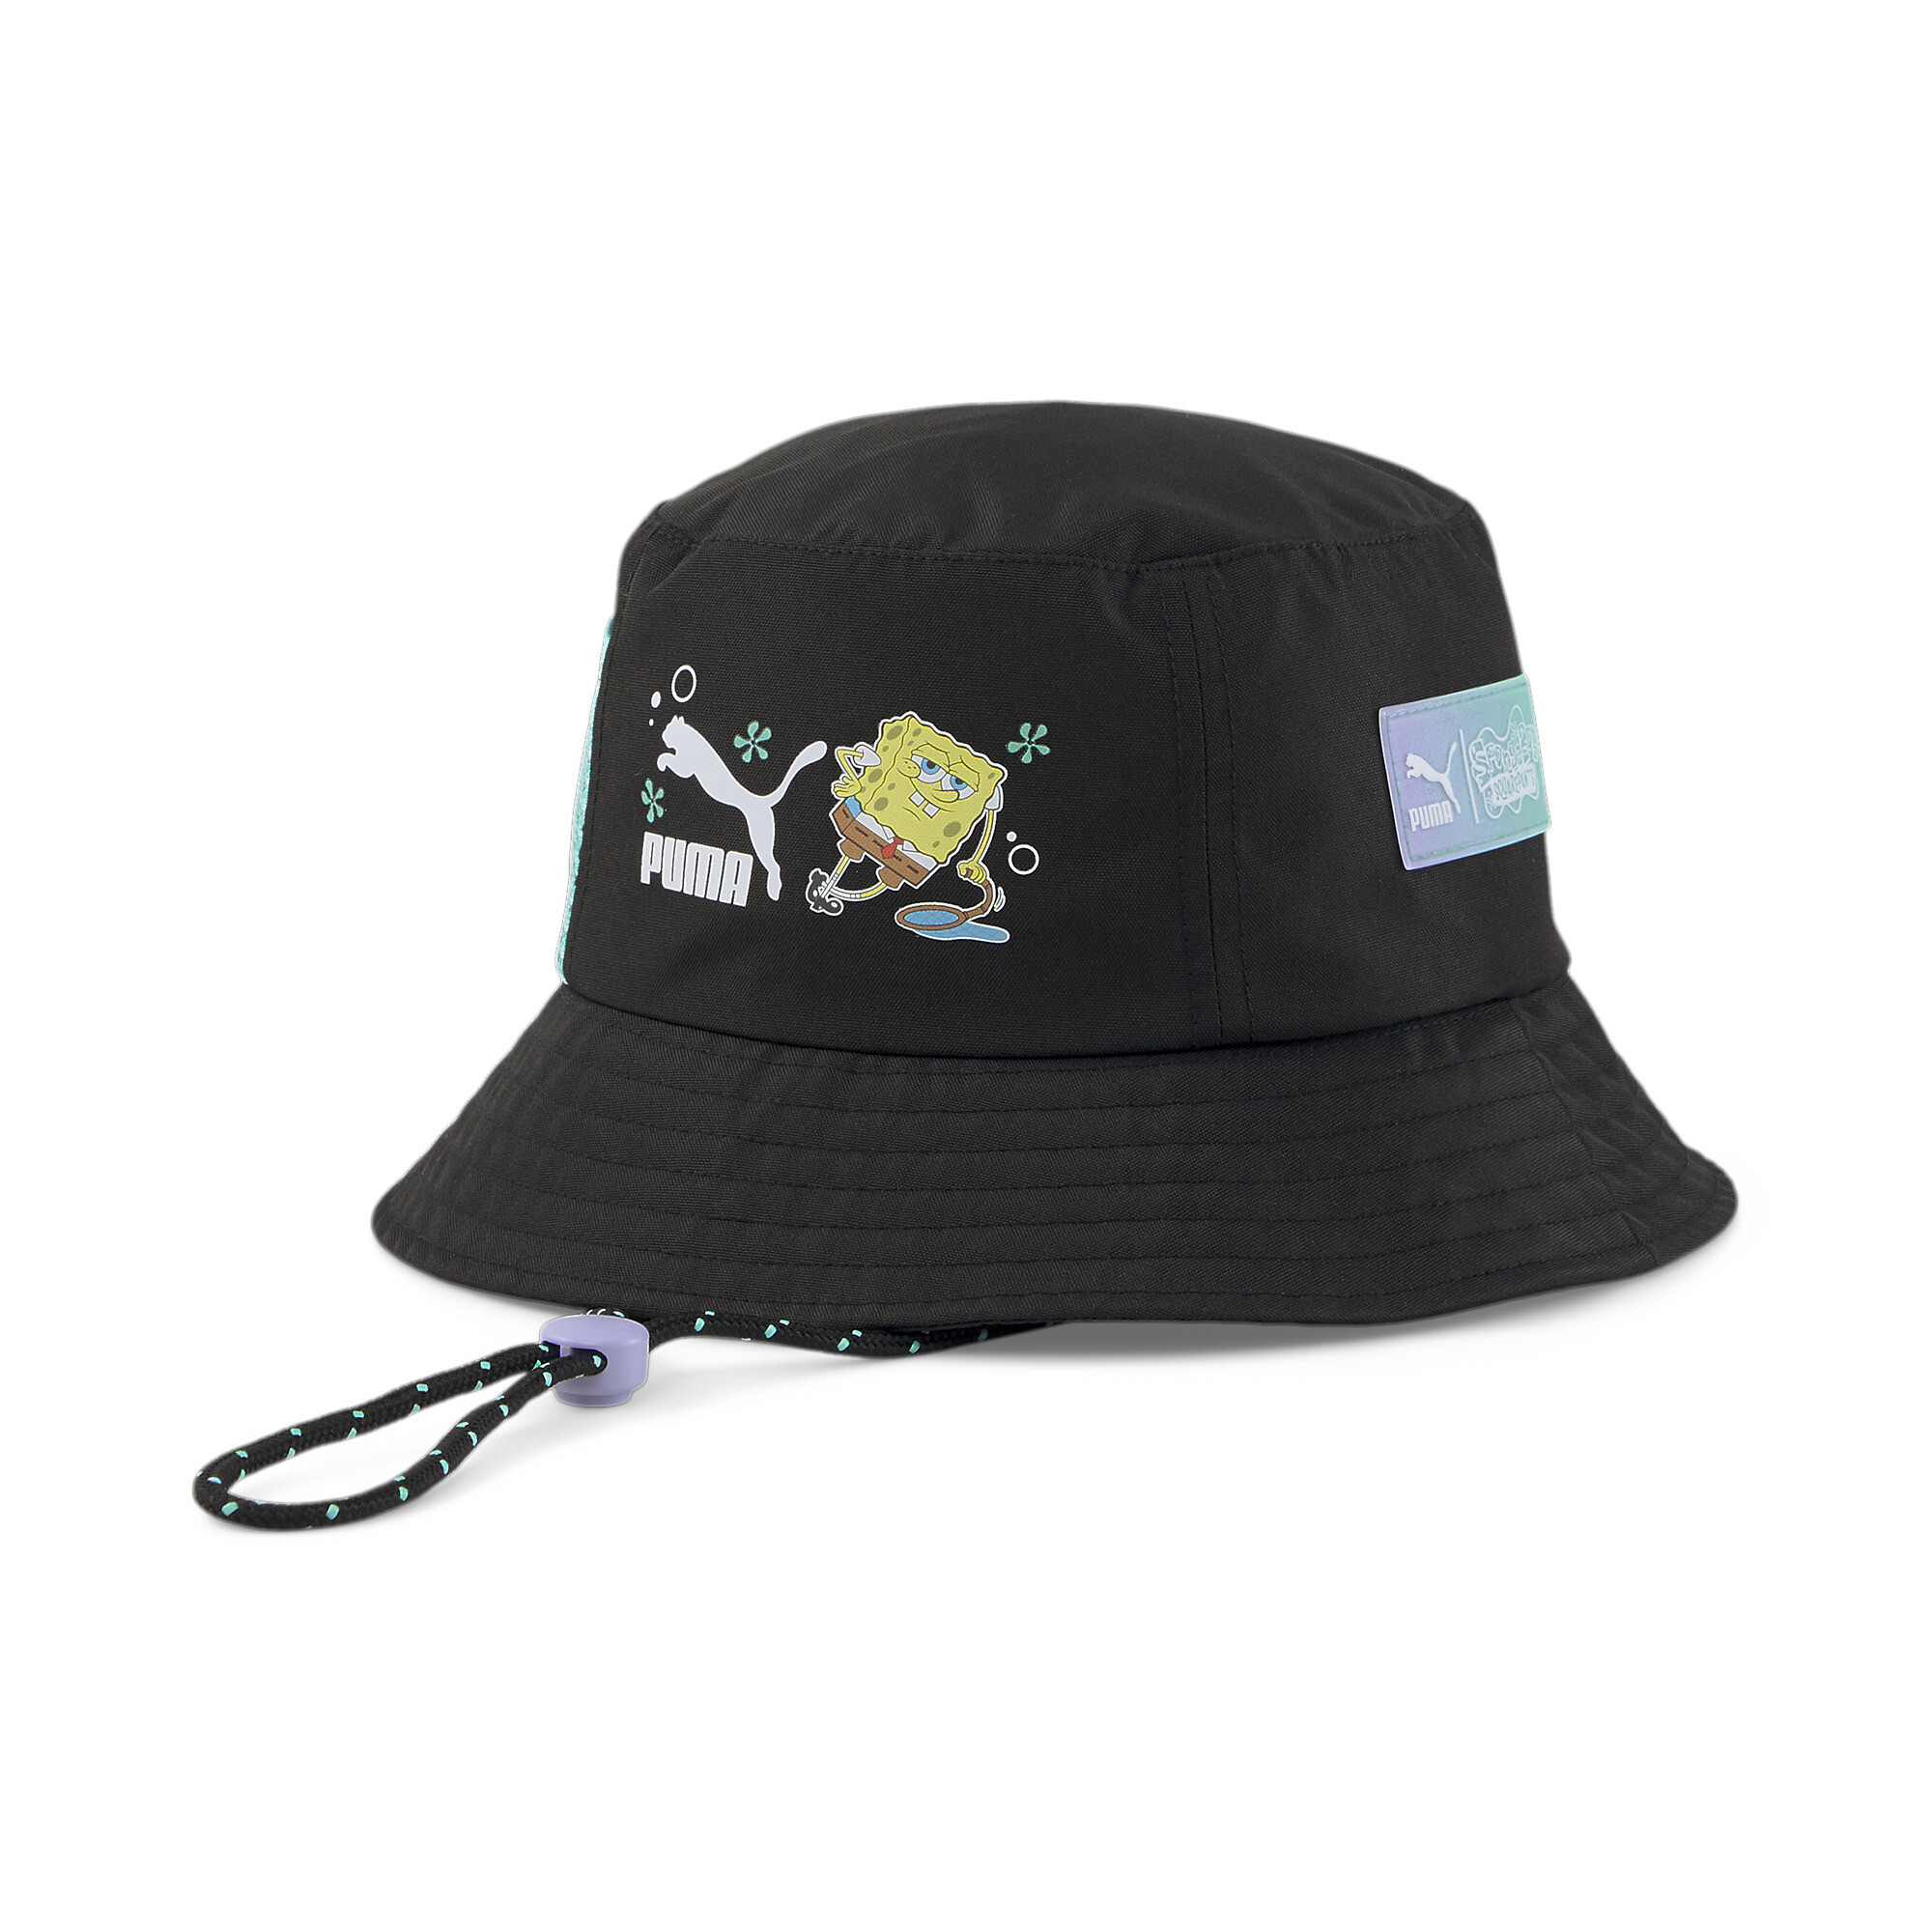 Men's PUMA X SPONGEBOB Bucket Hat In Black, Size Large